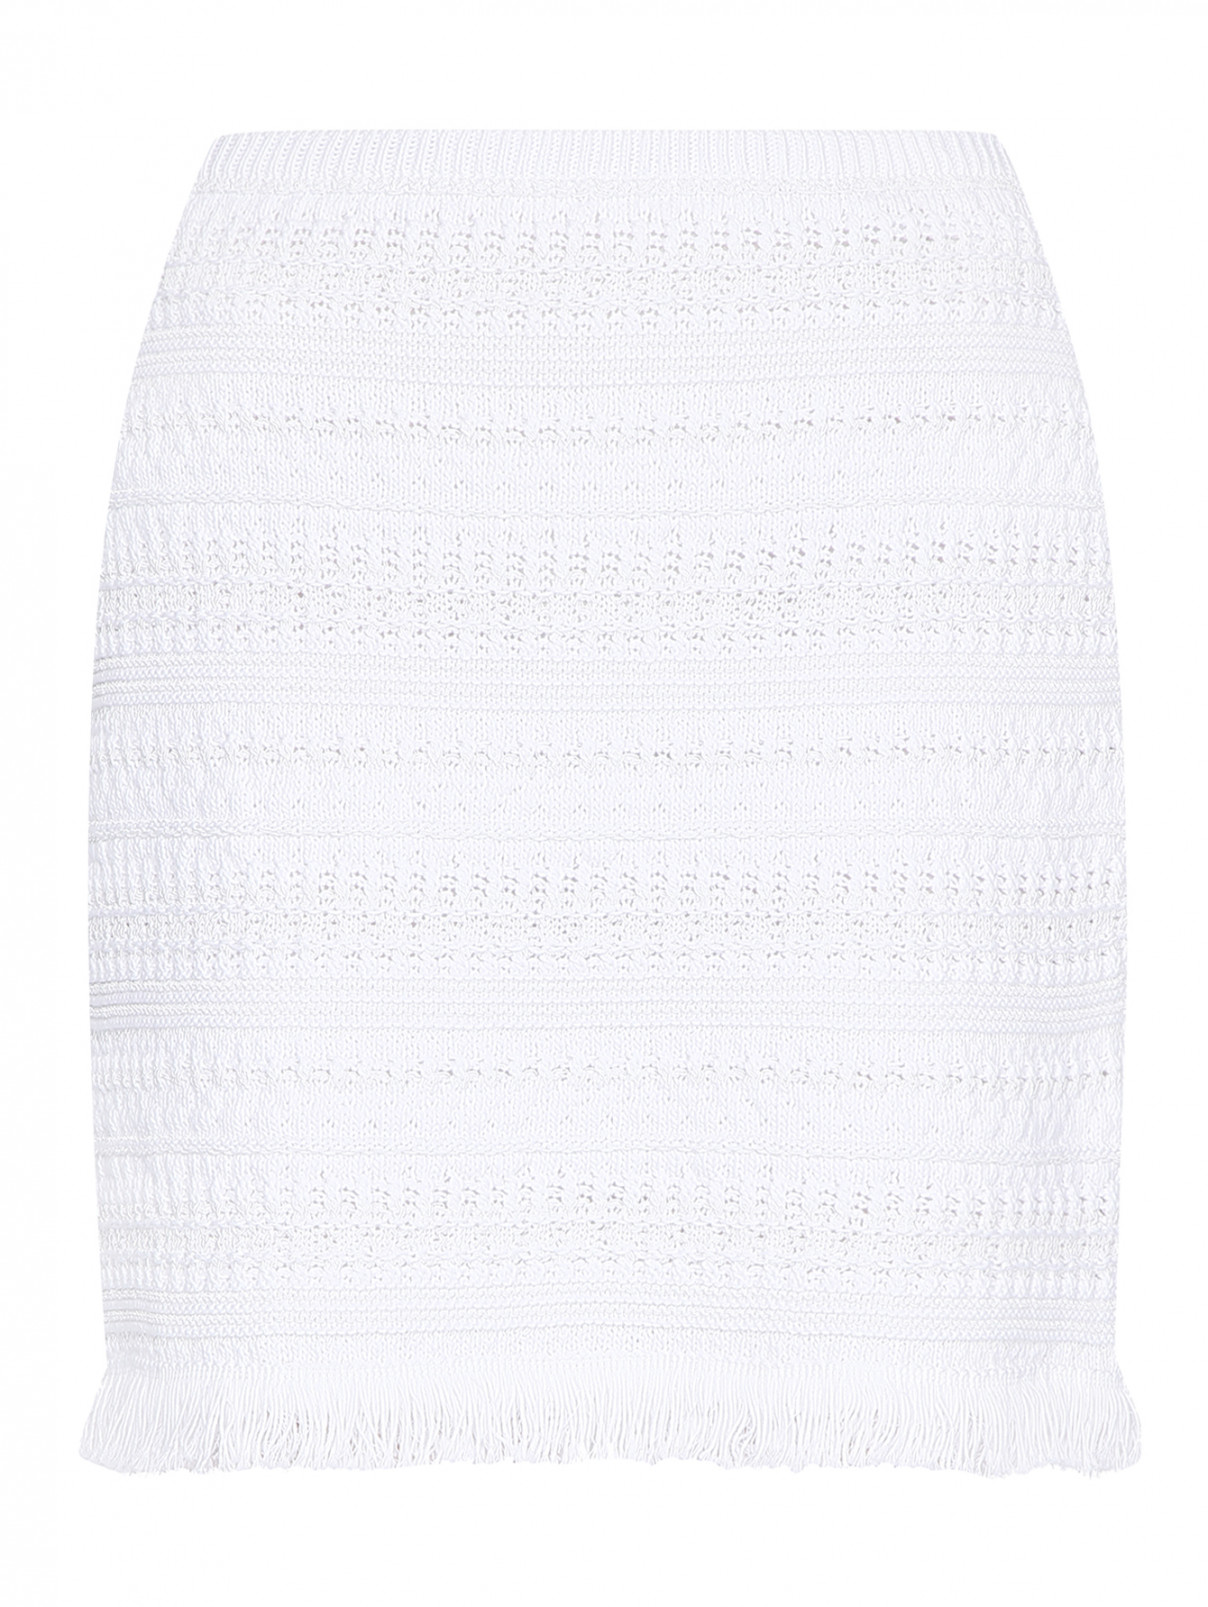 Трикотажная юбка на резинке Luisa Spagnoli  –  Общий вид  – Цвет:  Белый